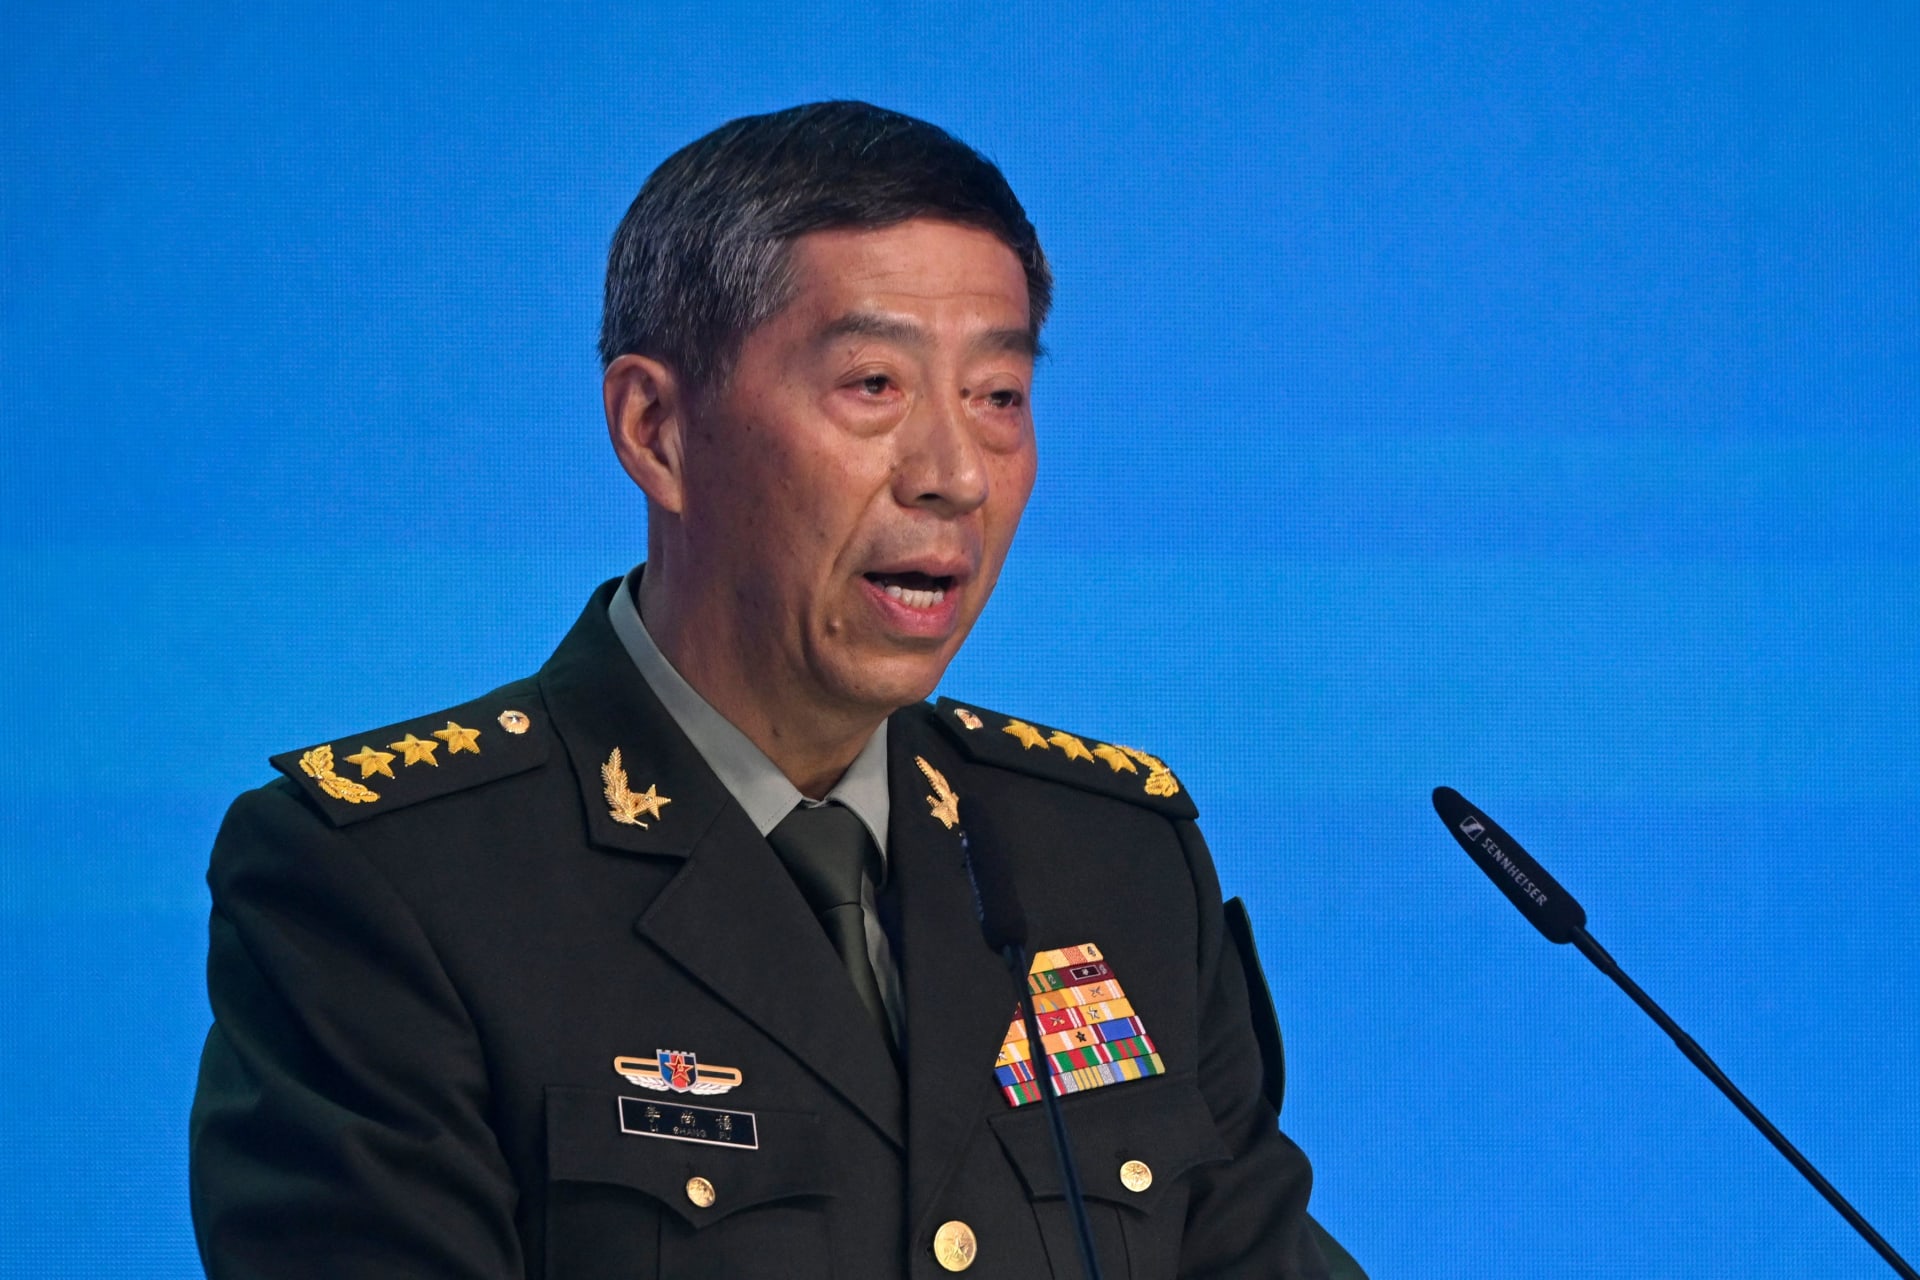 بعد تجنب بكين للسؤال.. تكهنات حول مكان وزير الدفاع الصيني